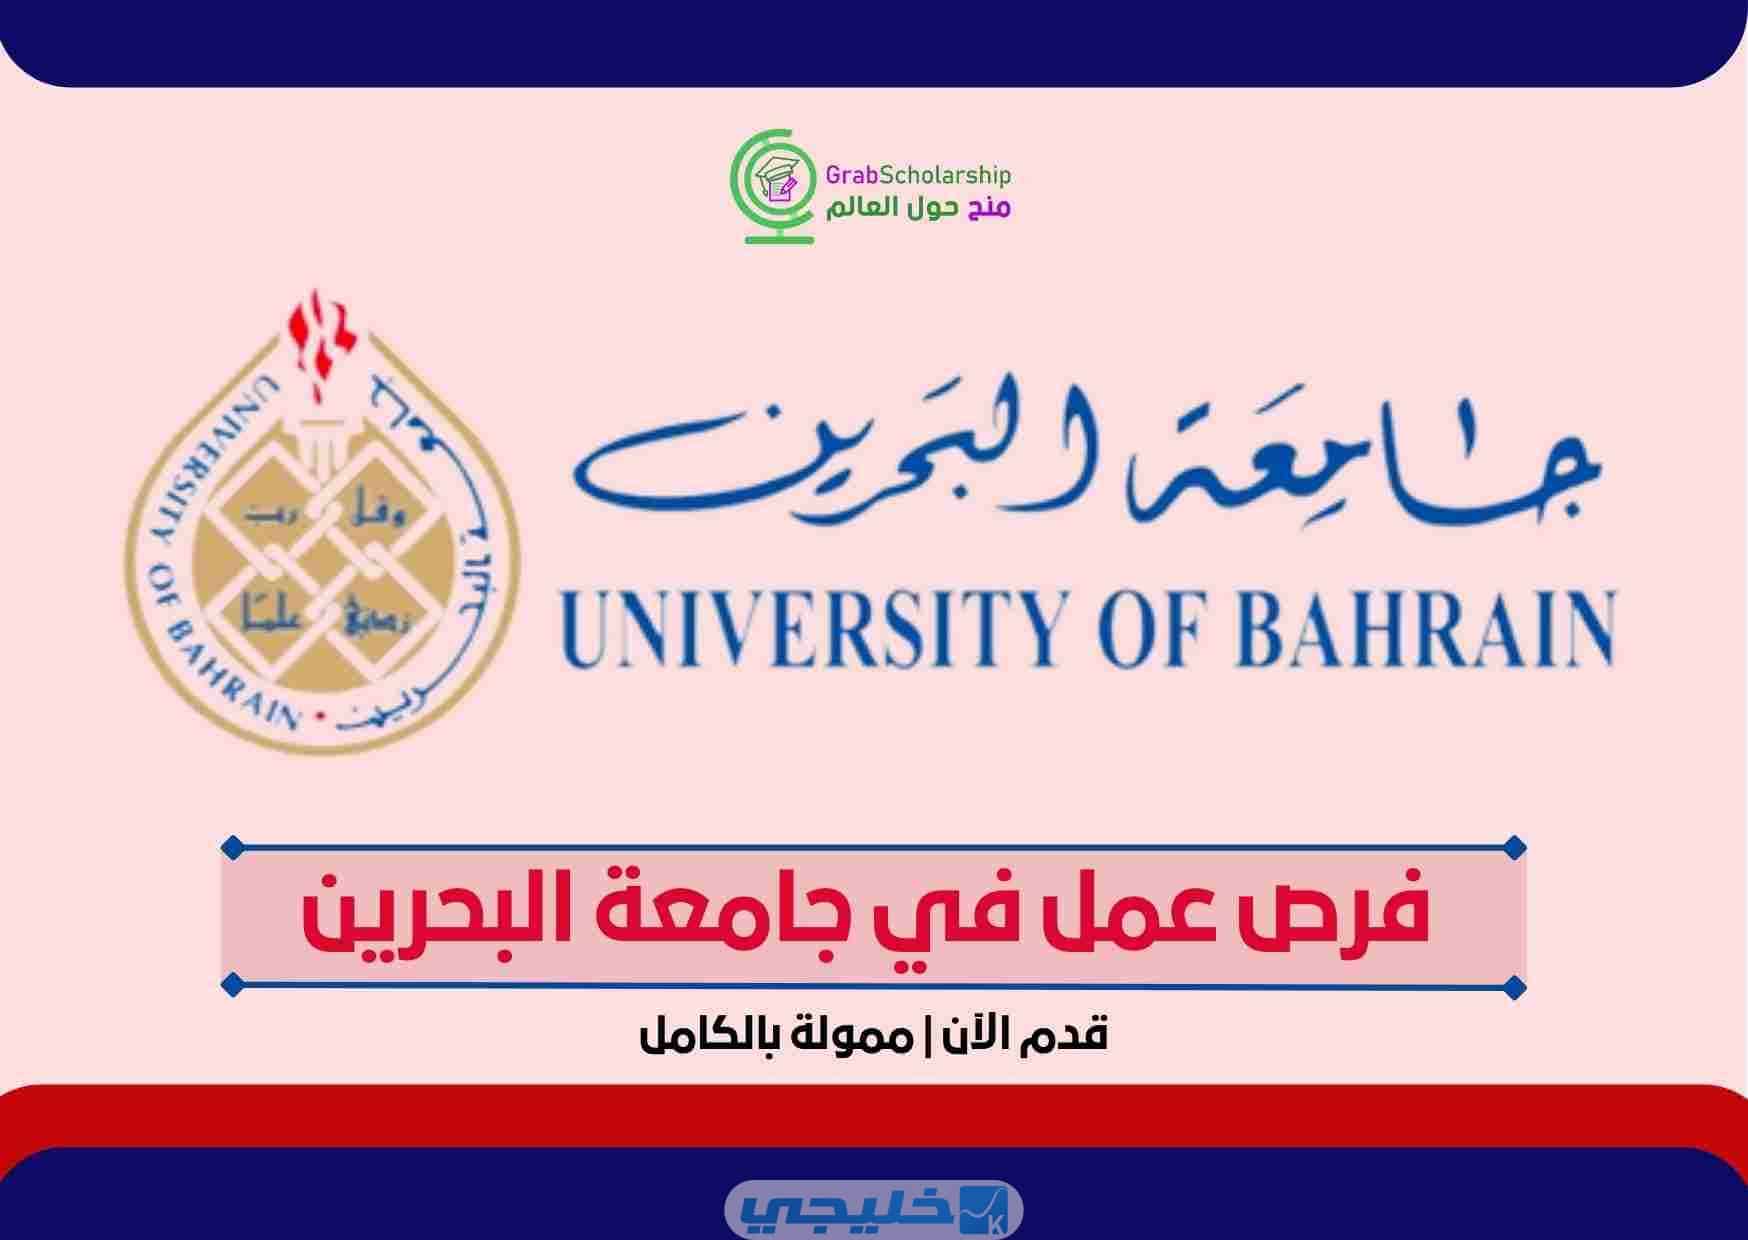 فرص عمل في جامعة البحرين | ممولة بالكامل